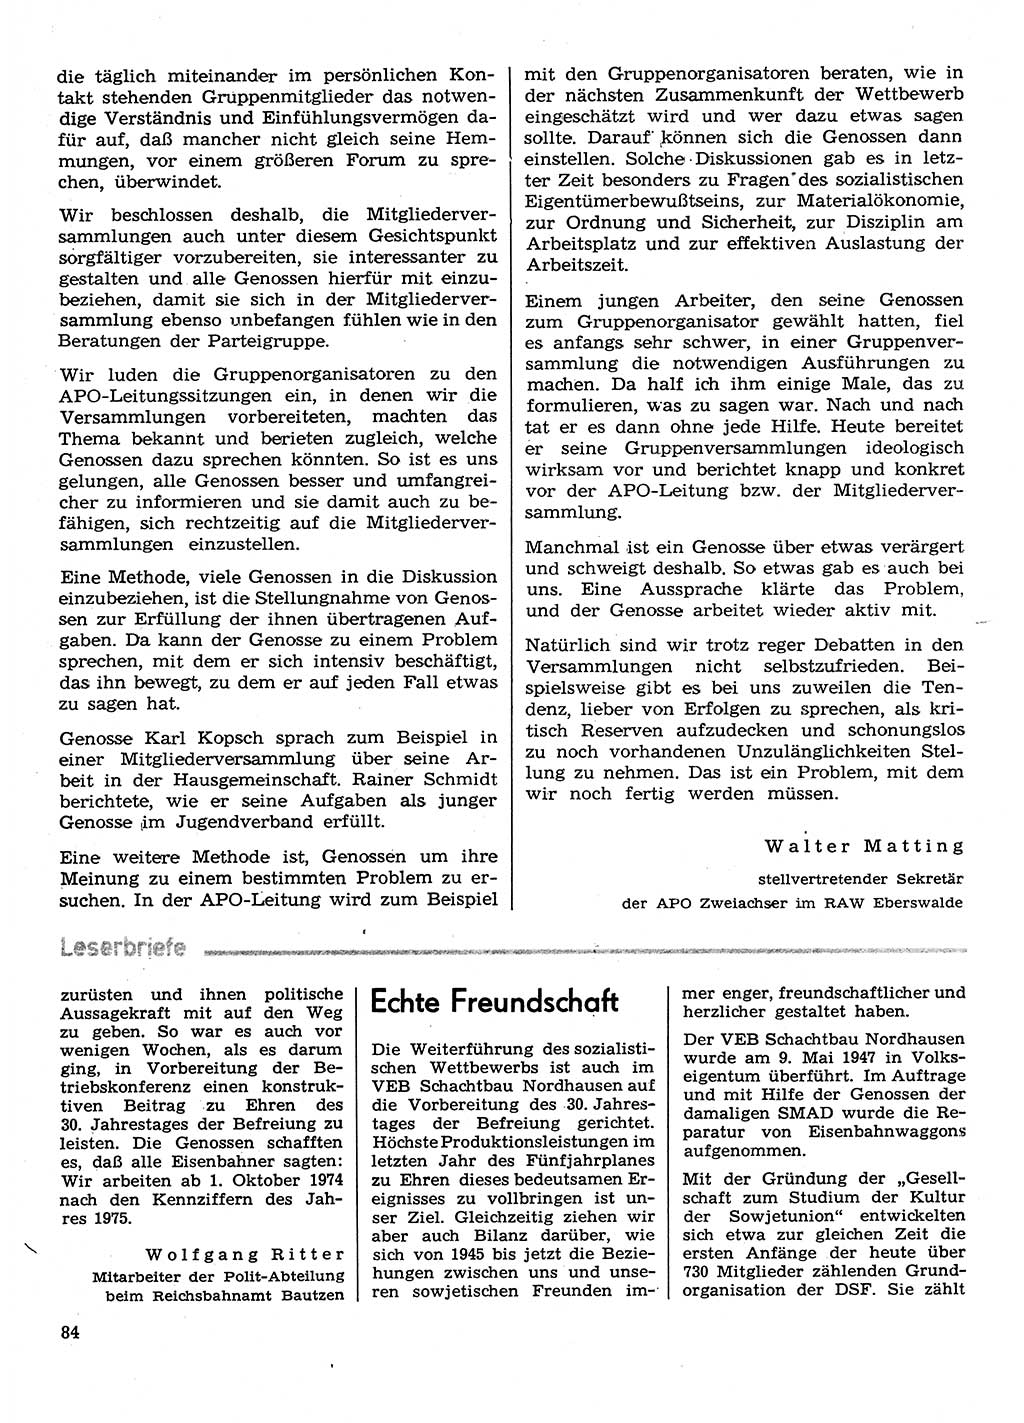 Neuer Weg (NW), Organ des Zentralkomitees (ZK) der SED (Sozialistische Einheitspartei Deutschlands) für Fragen des Parteilebens, 30. Jahrgang [Deutsche Demokratische Republik (DDR)] 1975, Seite 84 (NW ZK SED DDR 1975, S. 84)